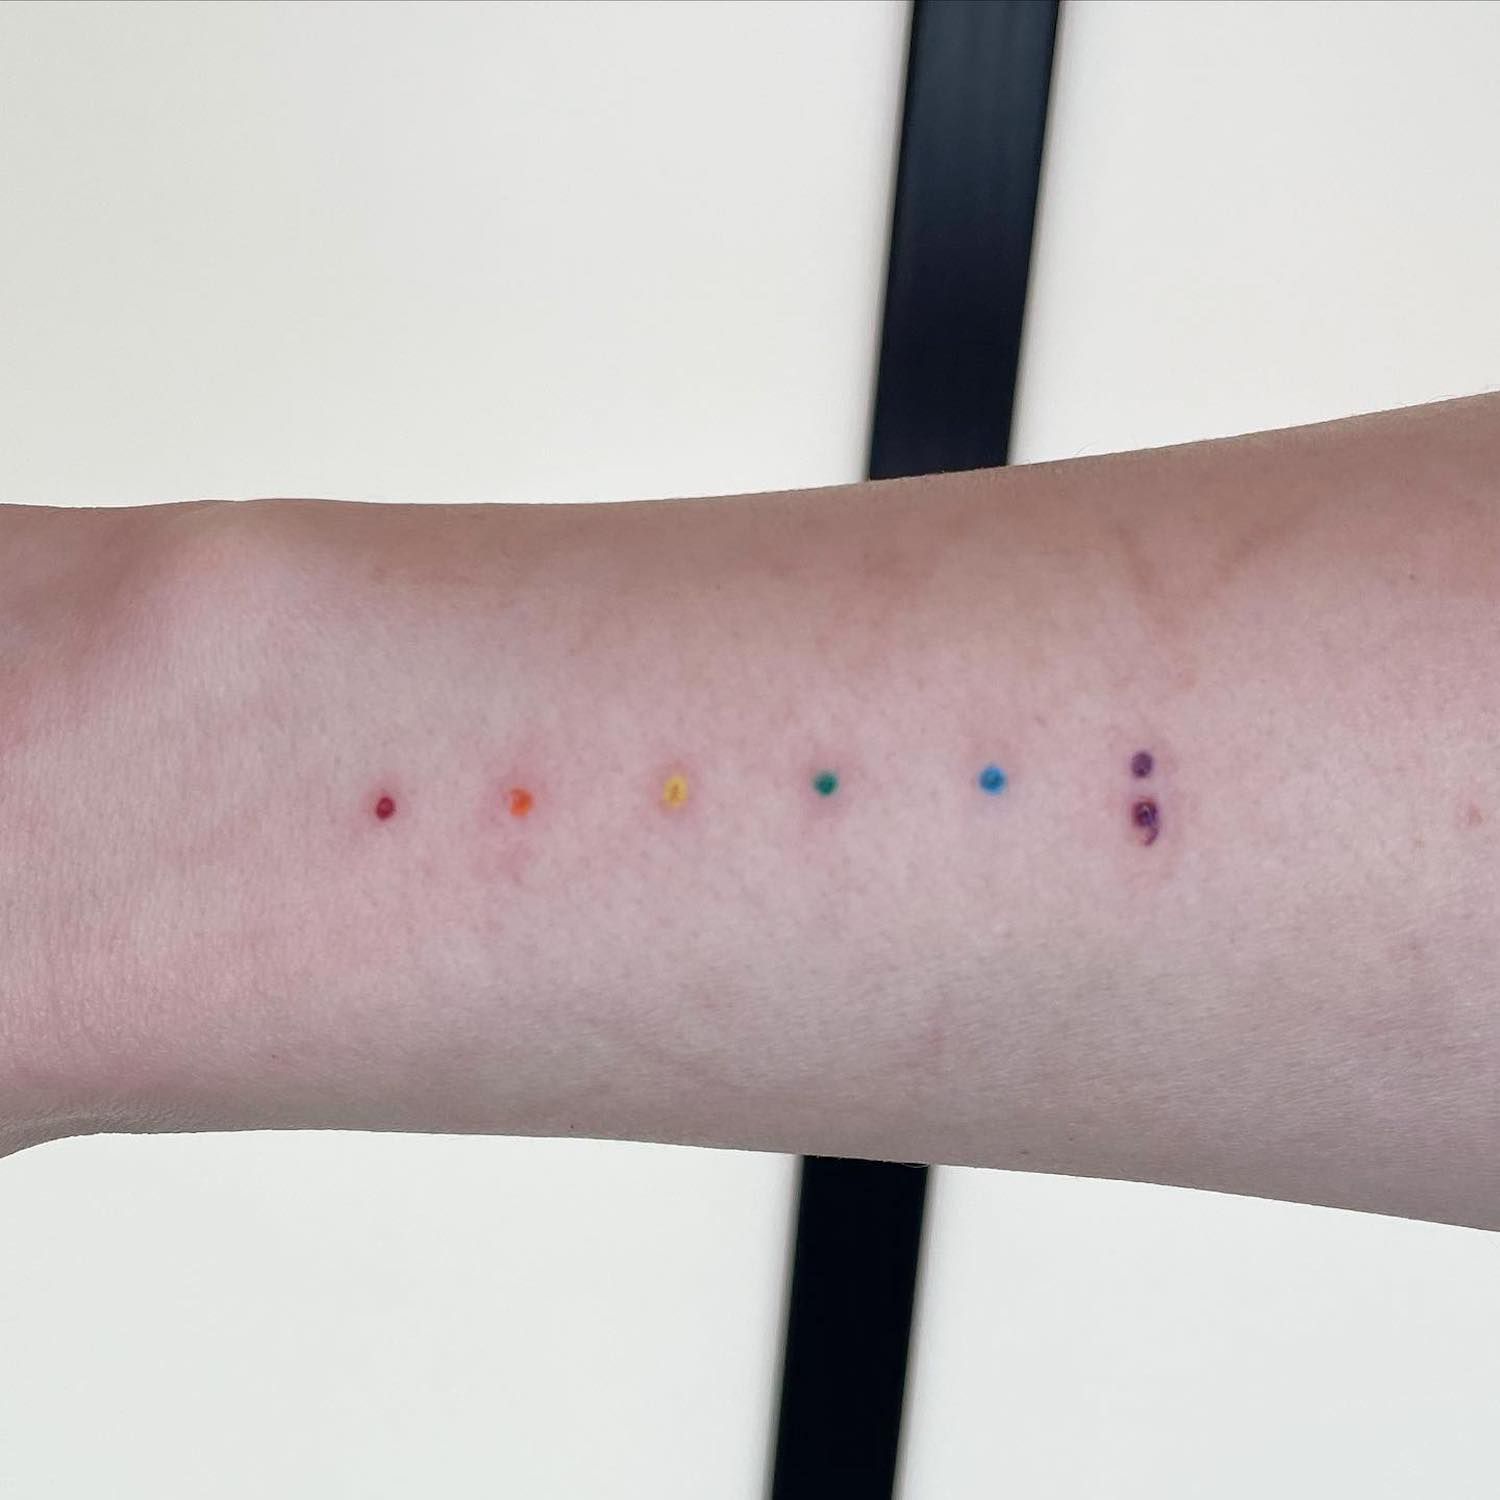 Mão com uma tatuagem na forma de pontos de arc o-íris com um ponto roxo com uma vírgula